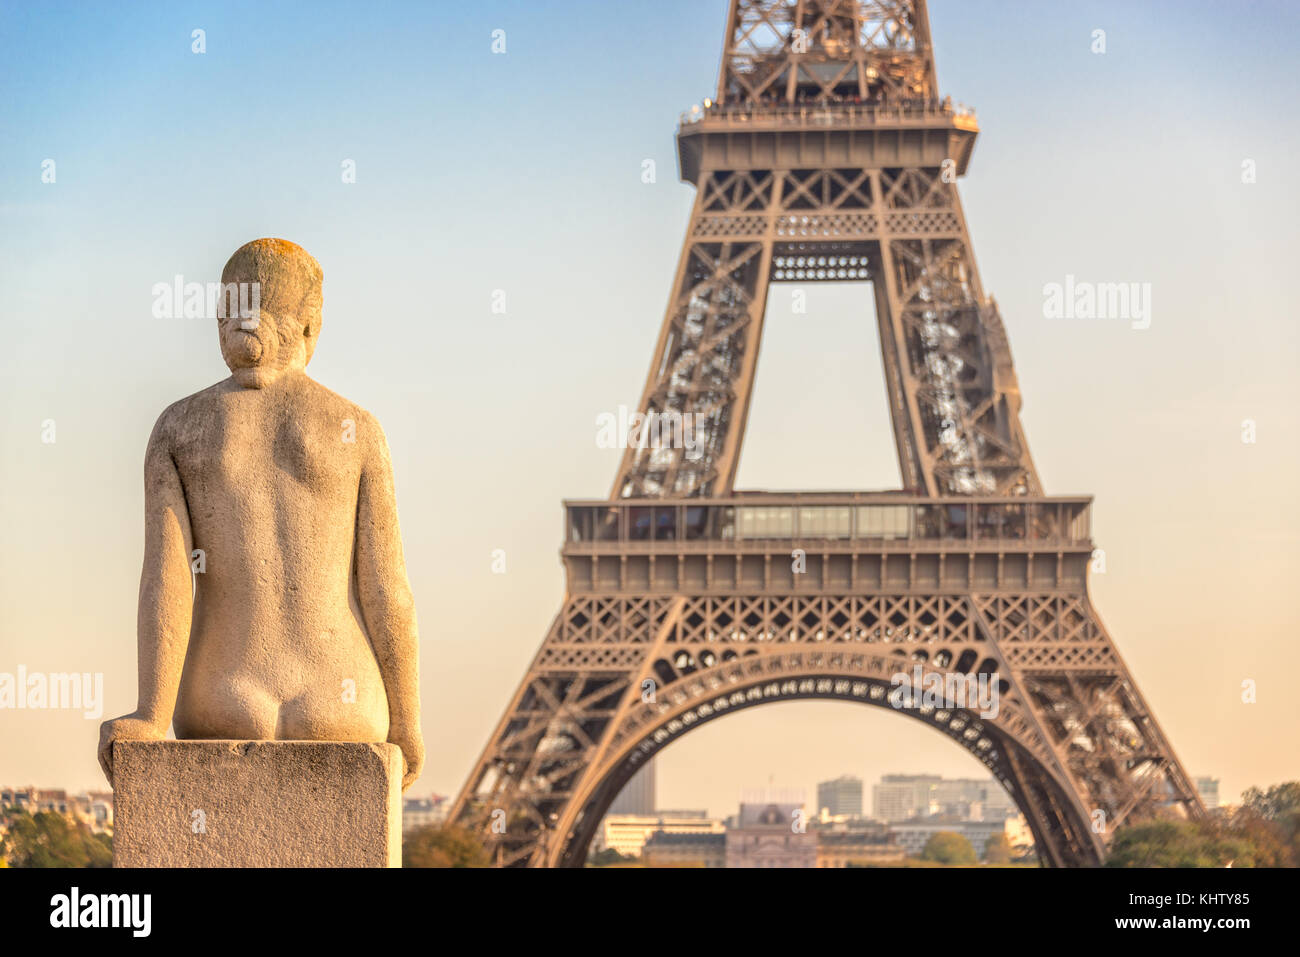 Mujer estatua de piedra en el jardín Trocadero, la torre Eiffel en el fondo, París Francia Foto de stock